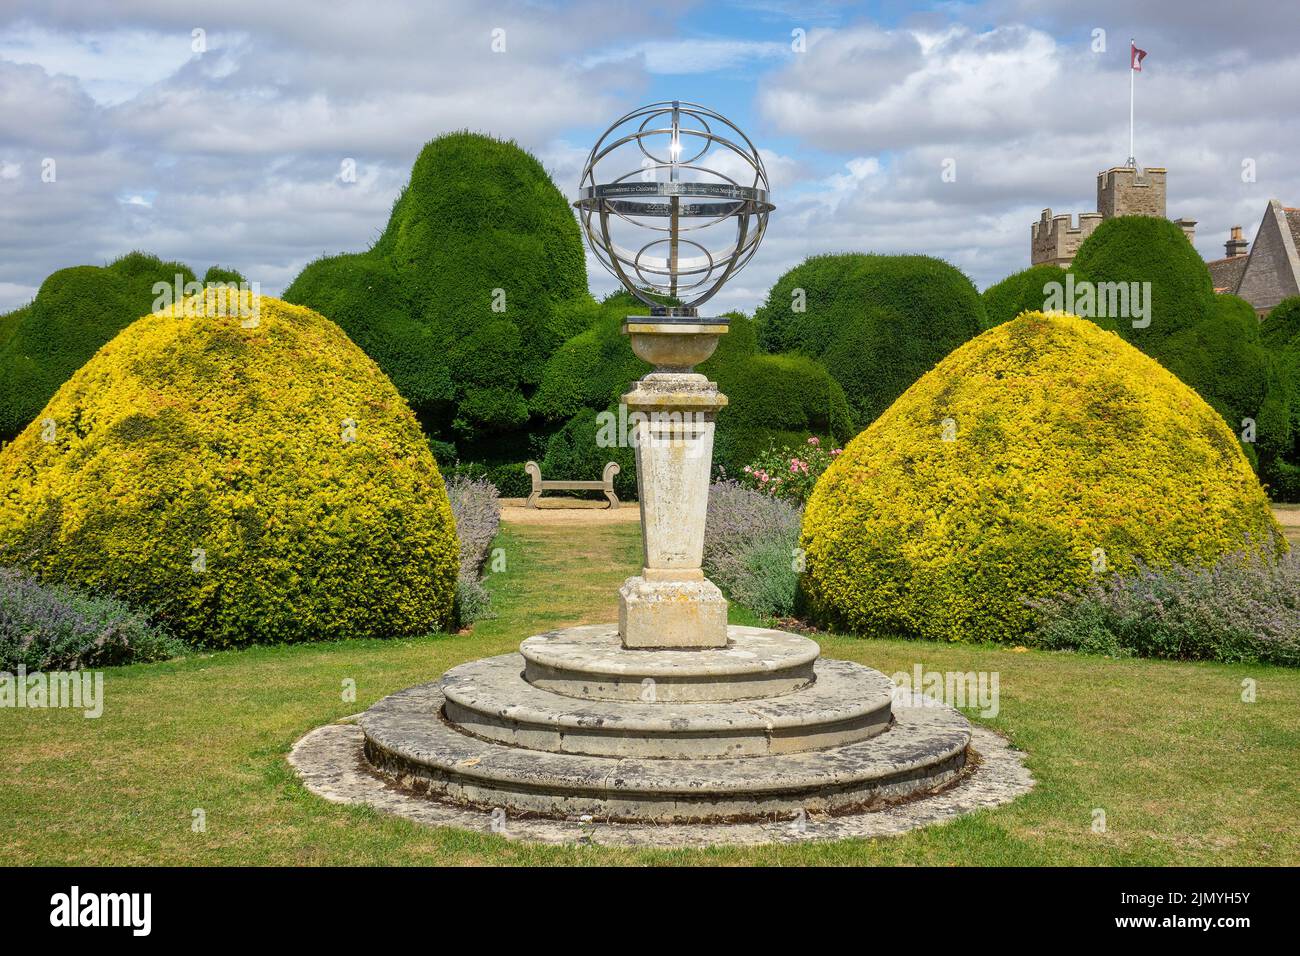 Inglaterra, Northamptonshire, los jardines del castillo de Rockingham y la esfera Armillary Foto de stock